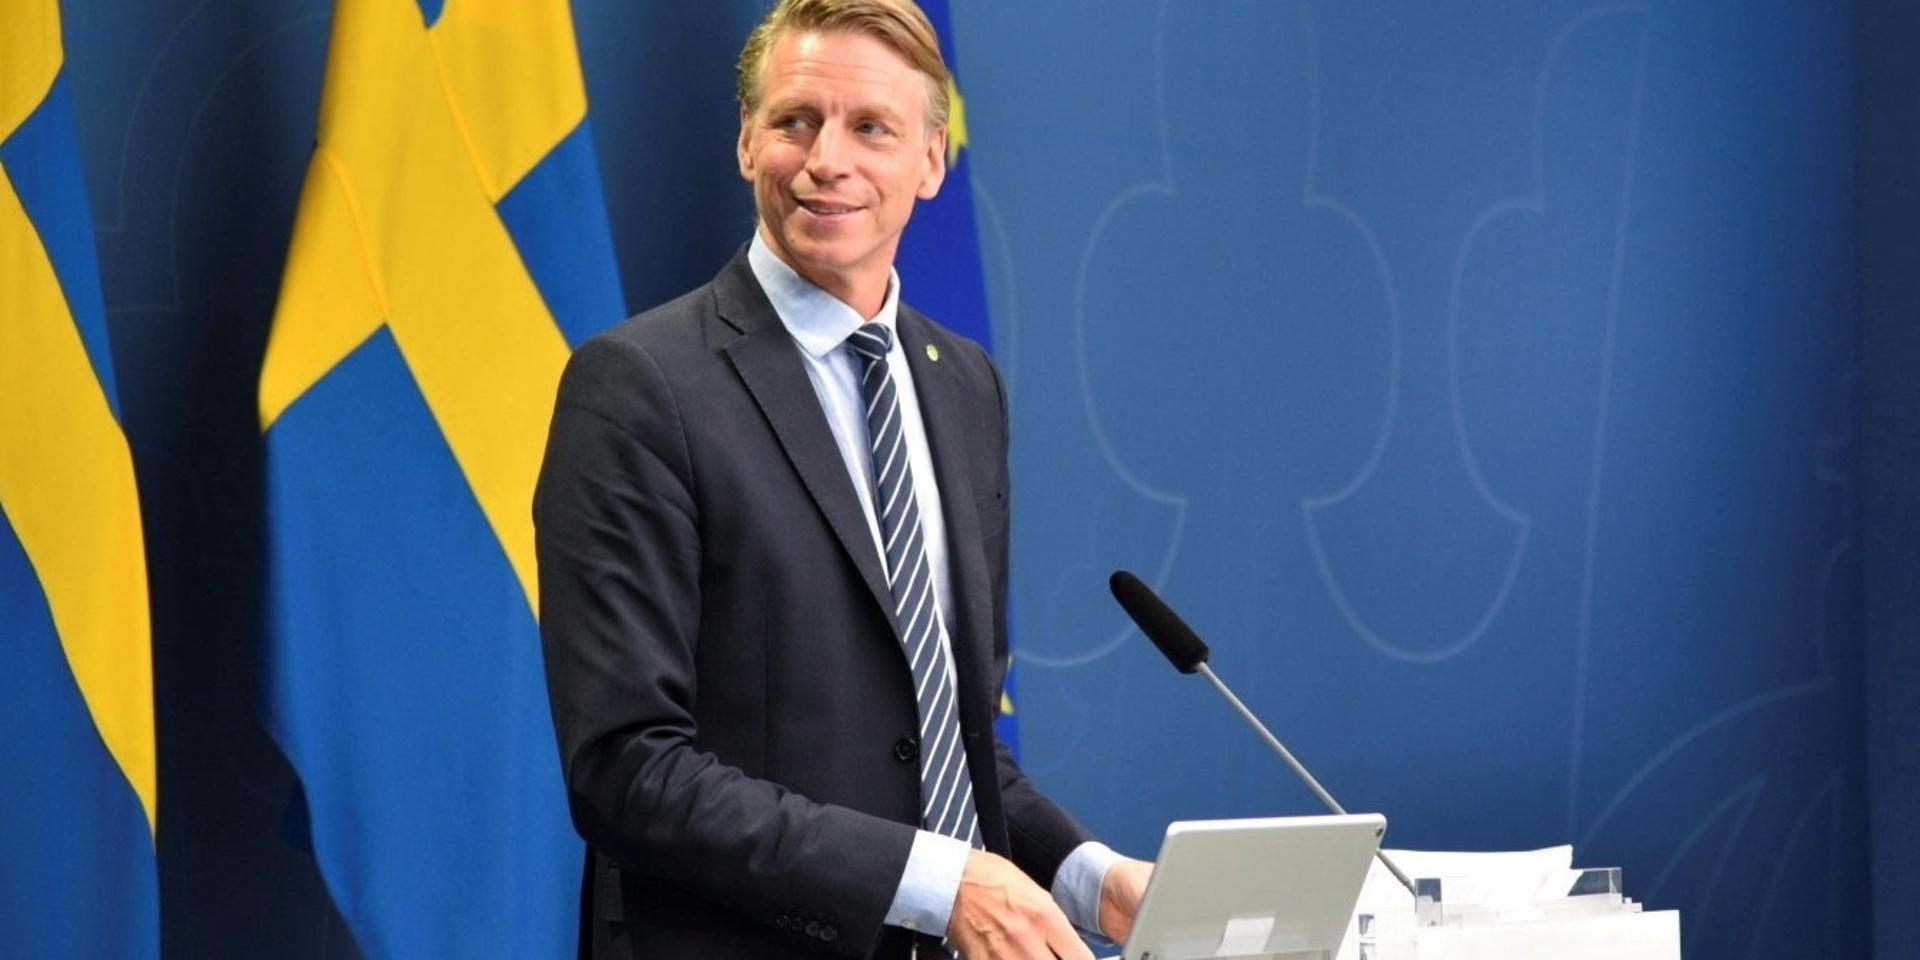 Miljöminister Per Bolund (MP) presenterar ihop med finansmarknadsminister Åsa Lindhagen (med på länk) nya miljösatsningar.